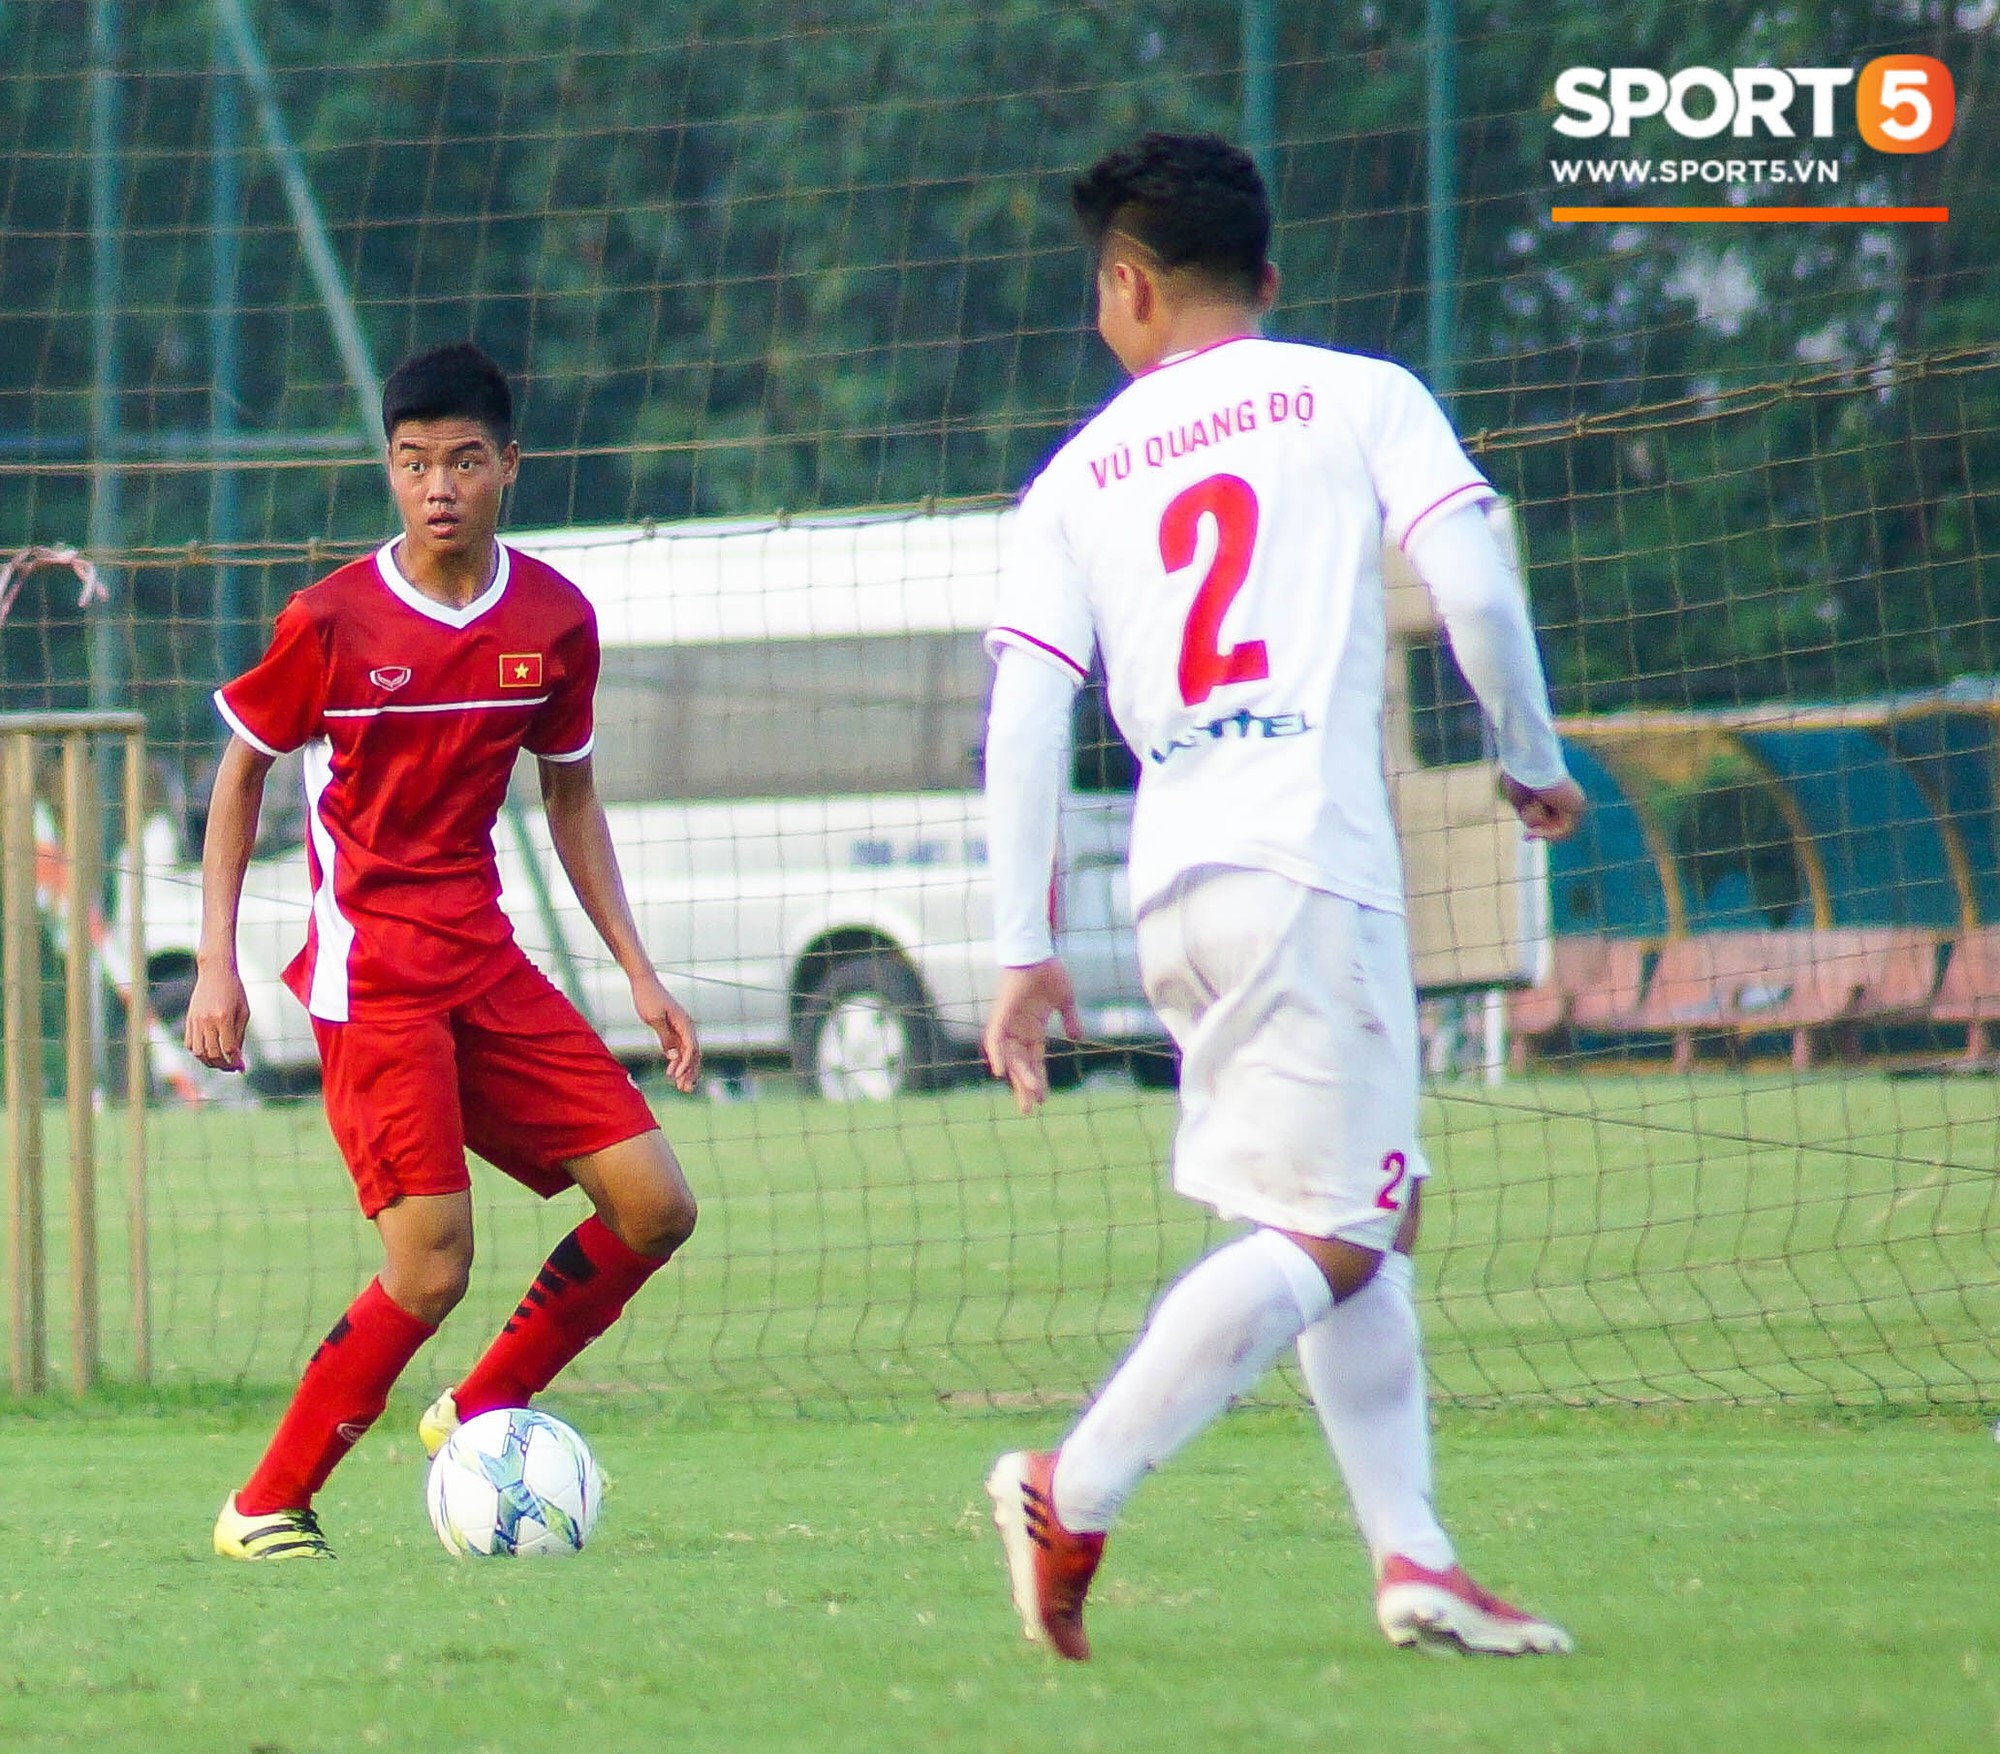 Thất bại trước đàn em của Trọng Đại, U16 Việt Nam vẫn được khen ngợi - Ảnh 5.